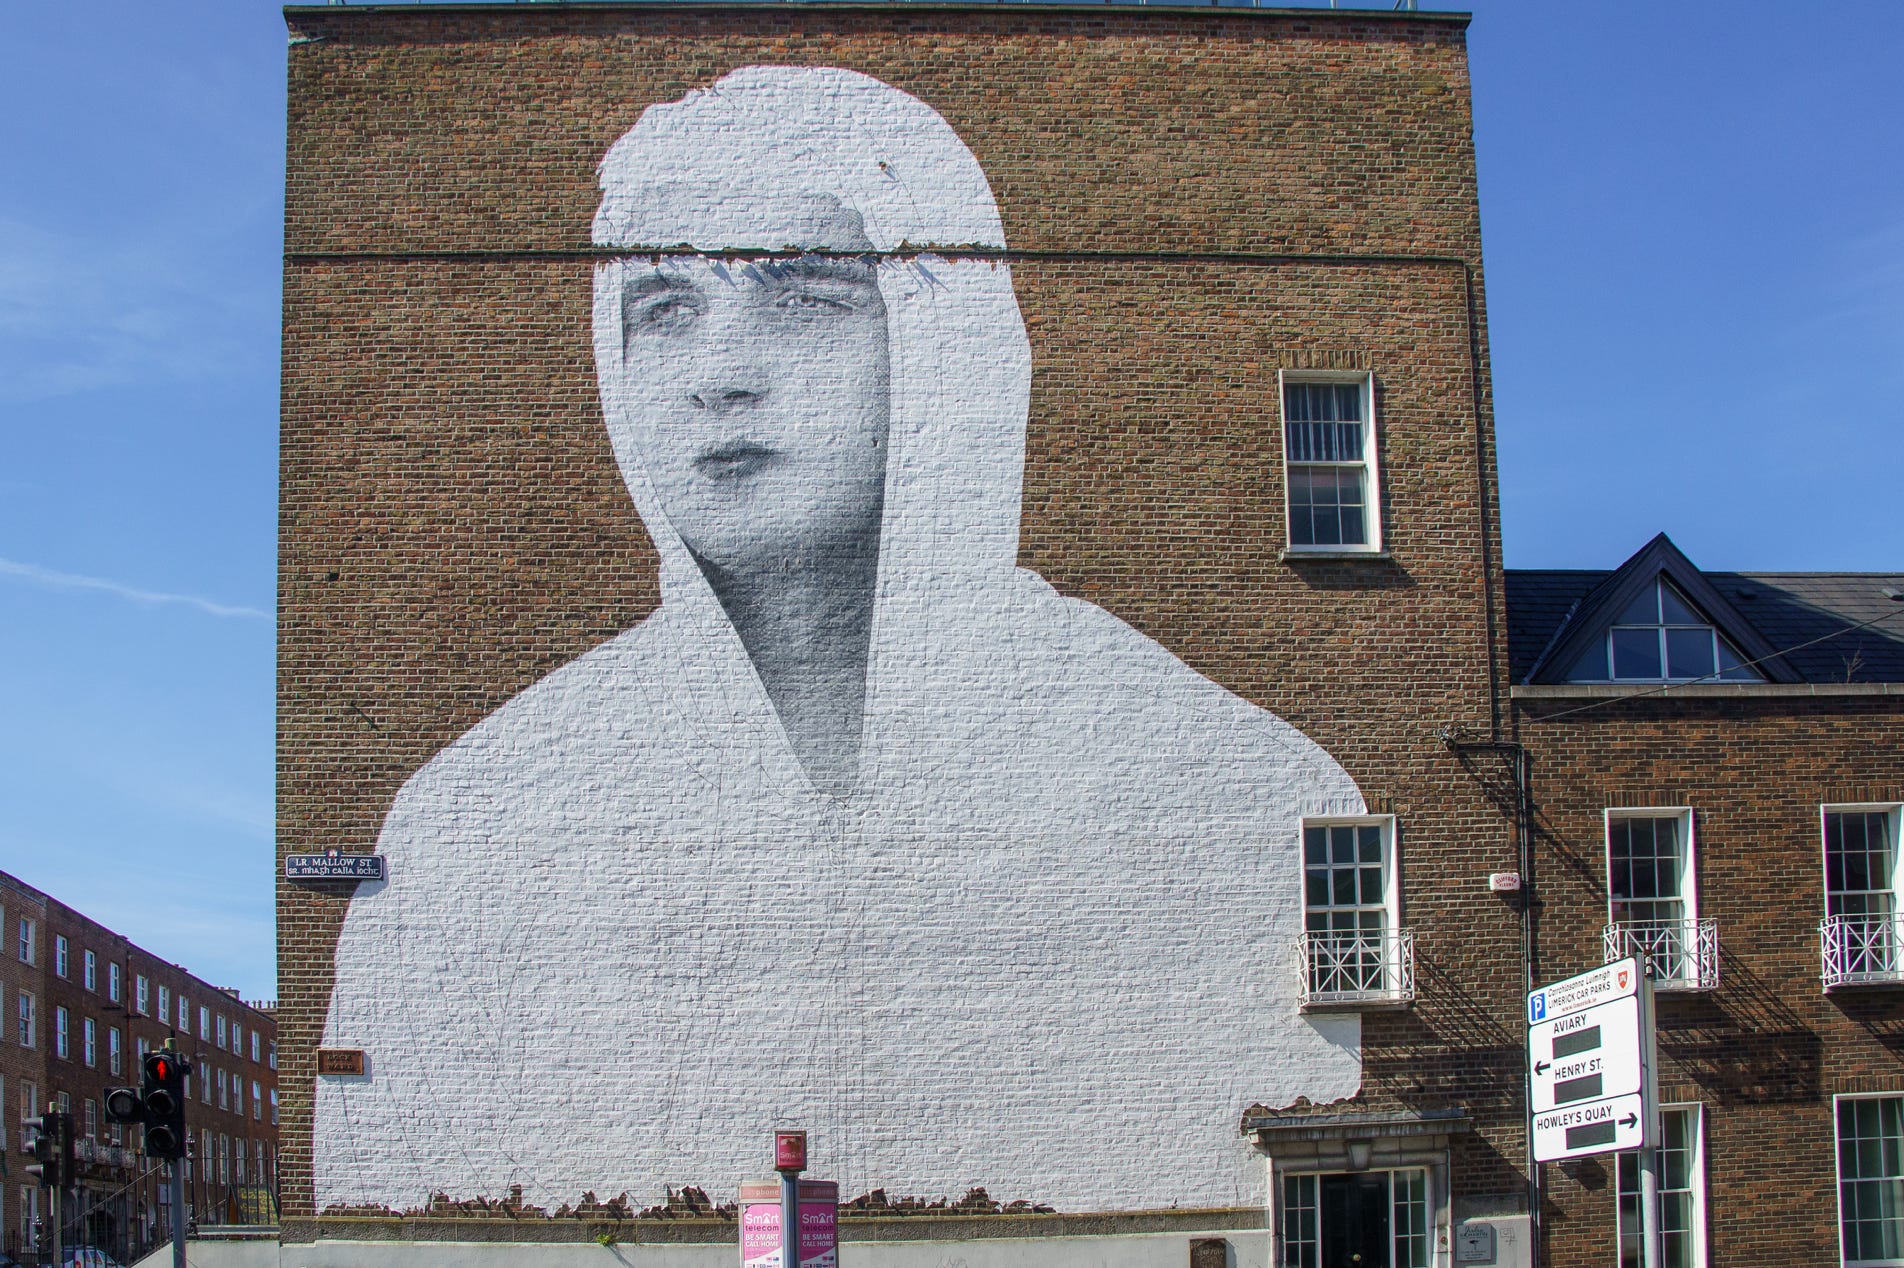 Joe Caslin is an Irish street artist, art teacher and activist.